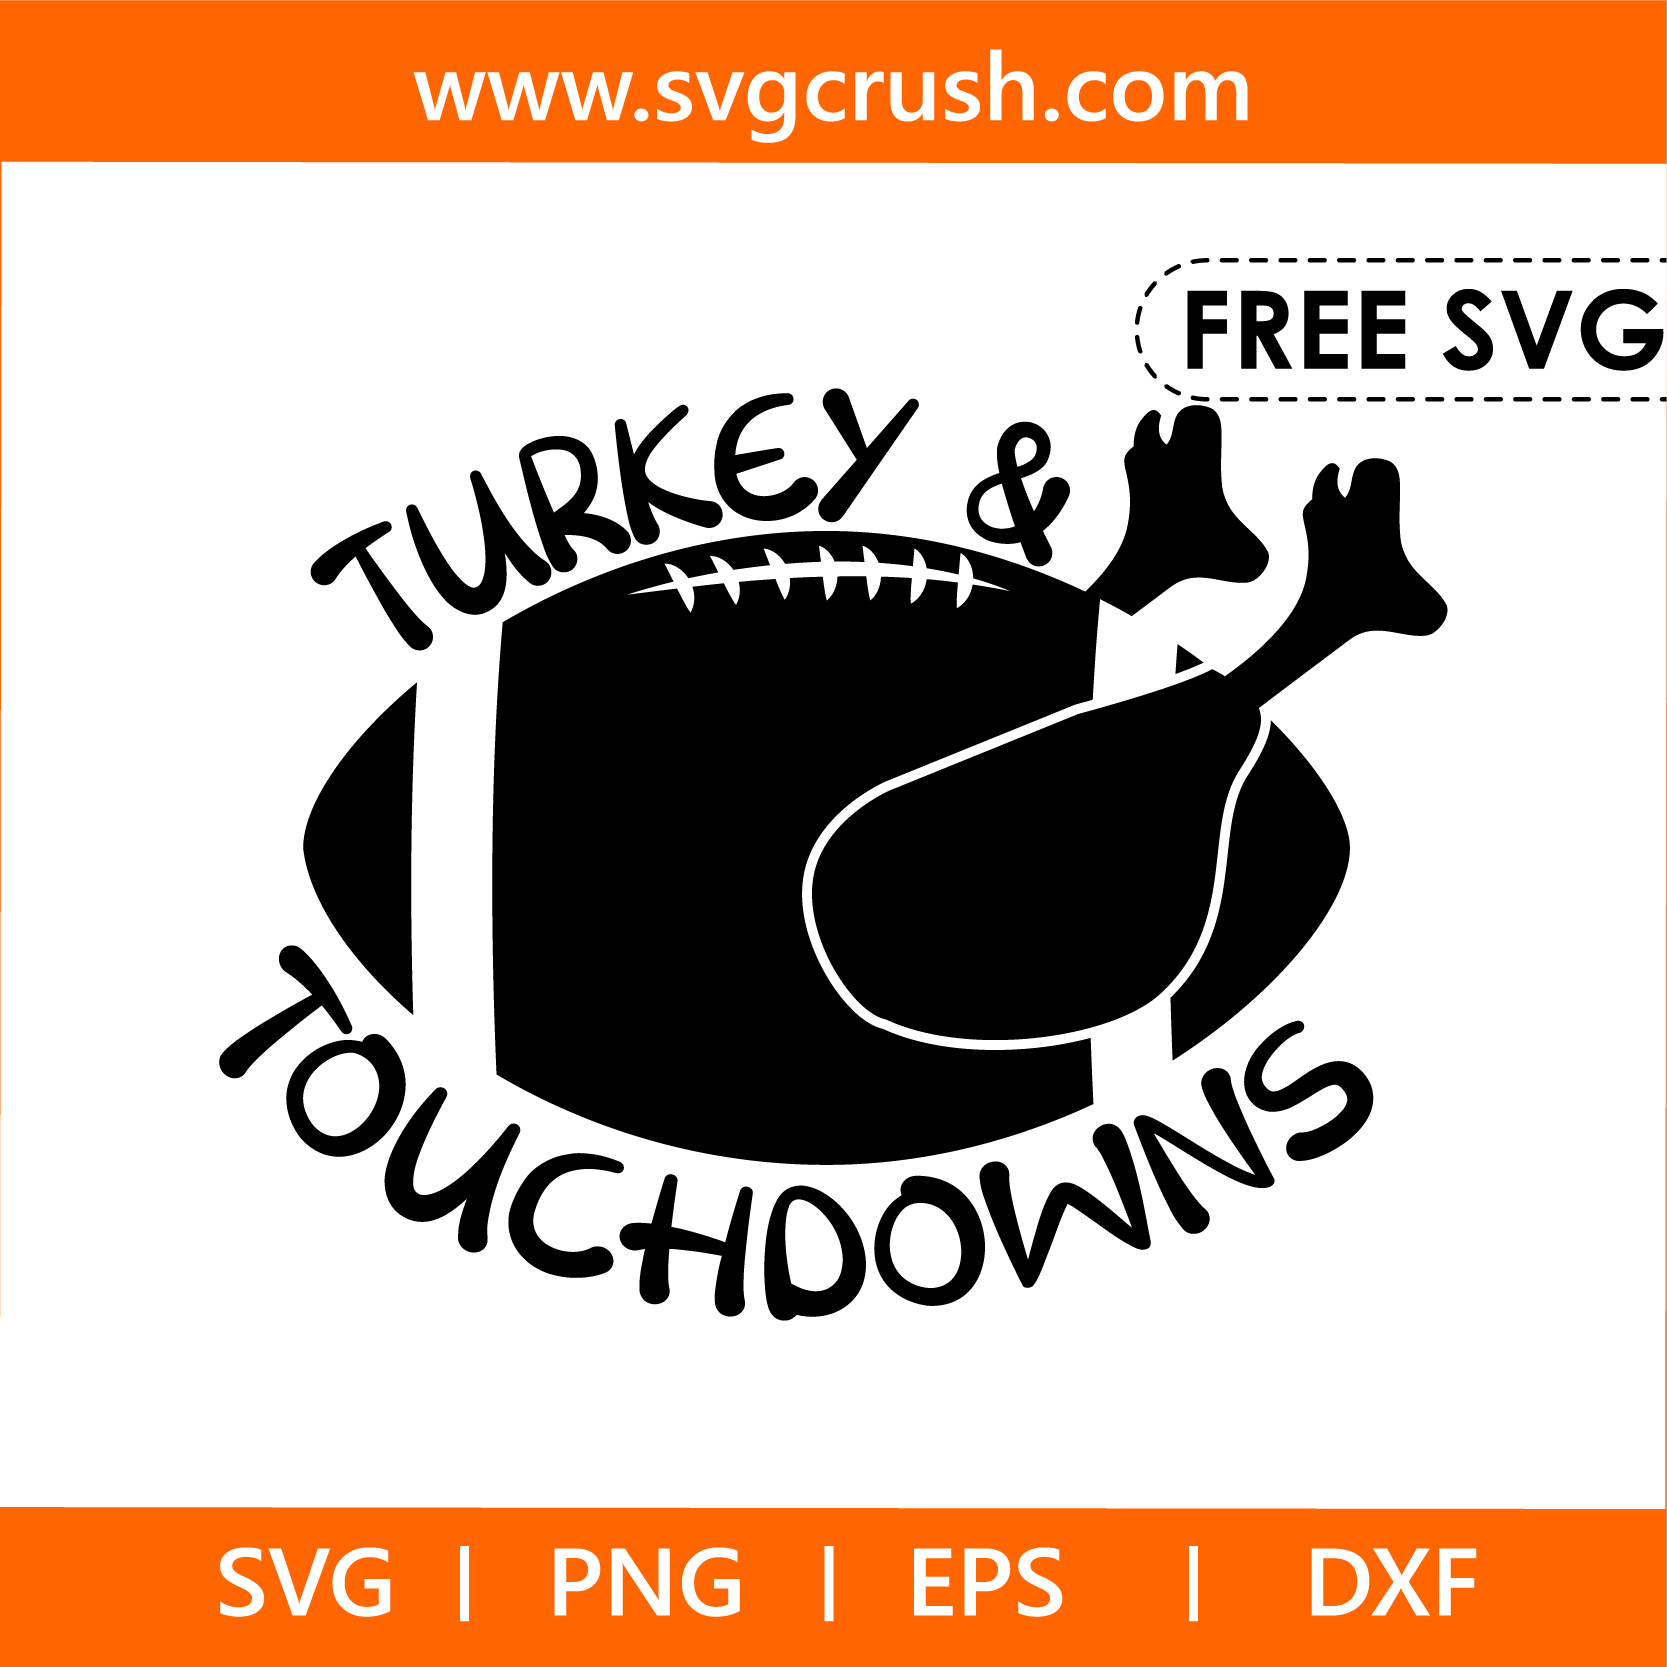 free turkey-and-touchdown-003 svg